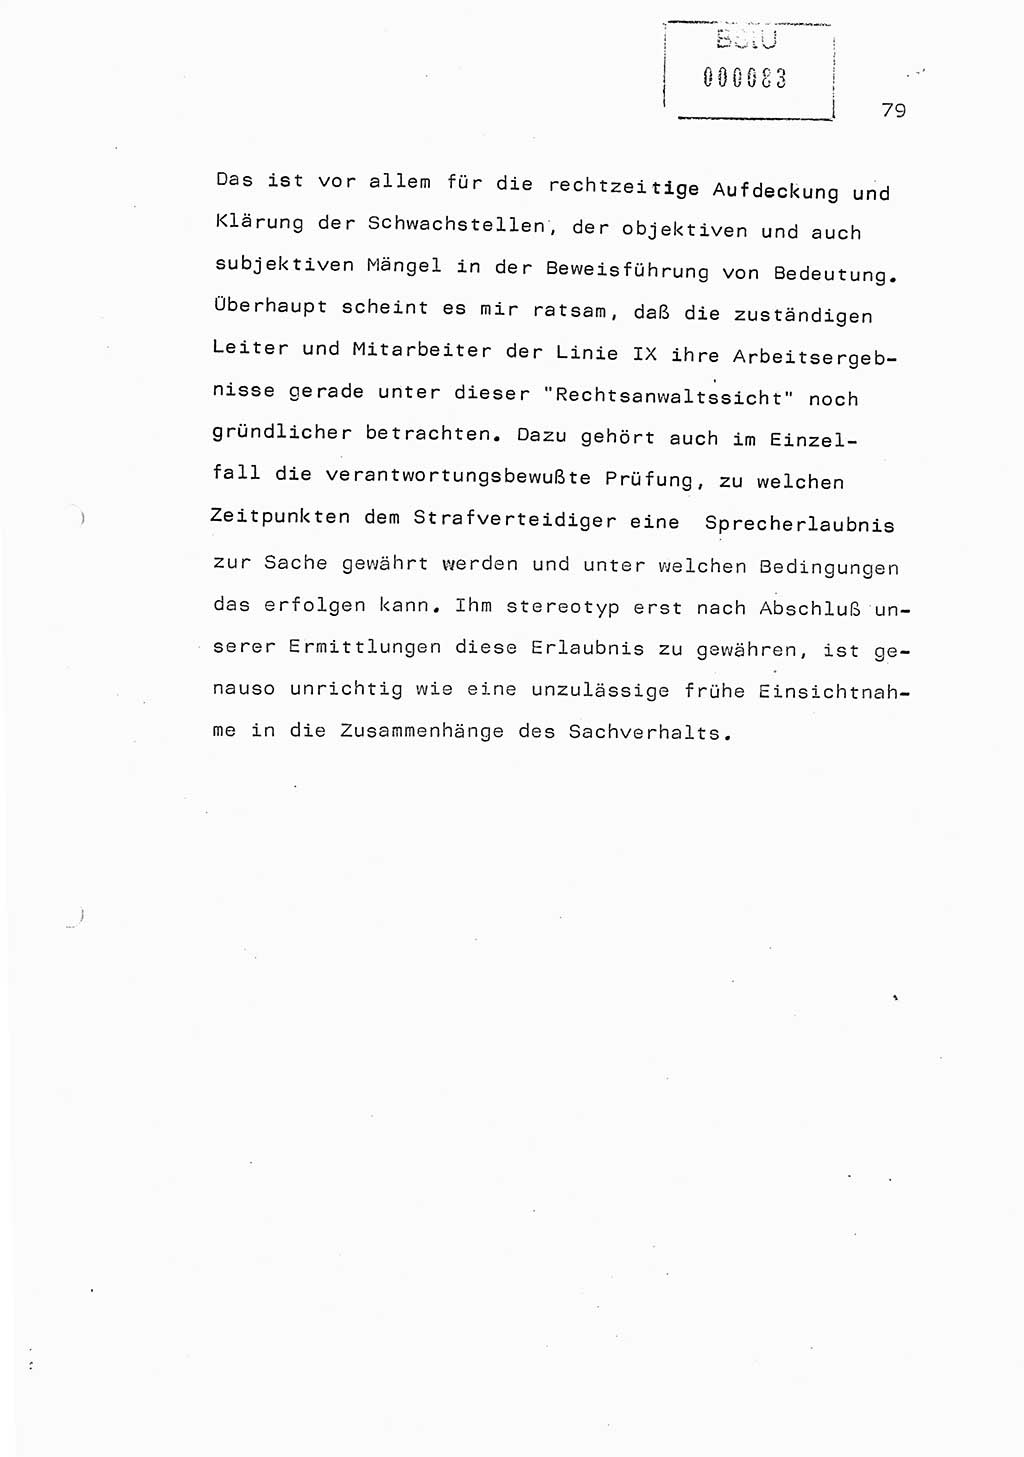 Referat (Generaloberst Erich Mielke) auf der Zentralen Dienstkonferenz am 24.5.1979 [Ministerium für Staatssicherheit (MfS), Deutsche Demokratische Republik (DDR), Der Minister], Berlin 1979, Seite 79 (Ref. DK DDR MfS Min. /79 1979, S. 79)